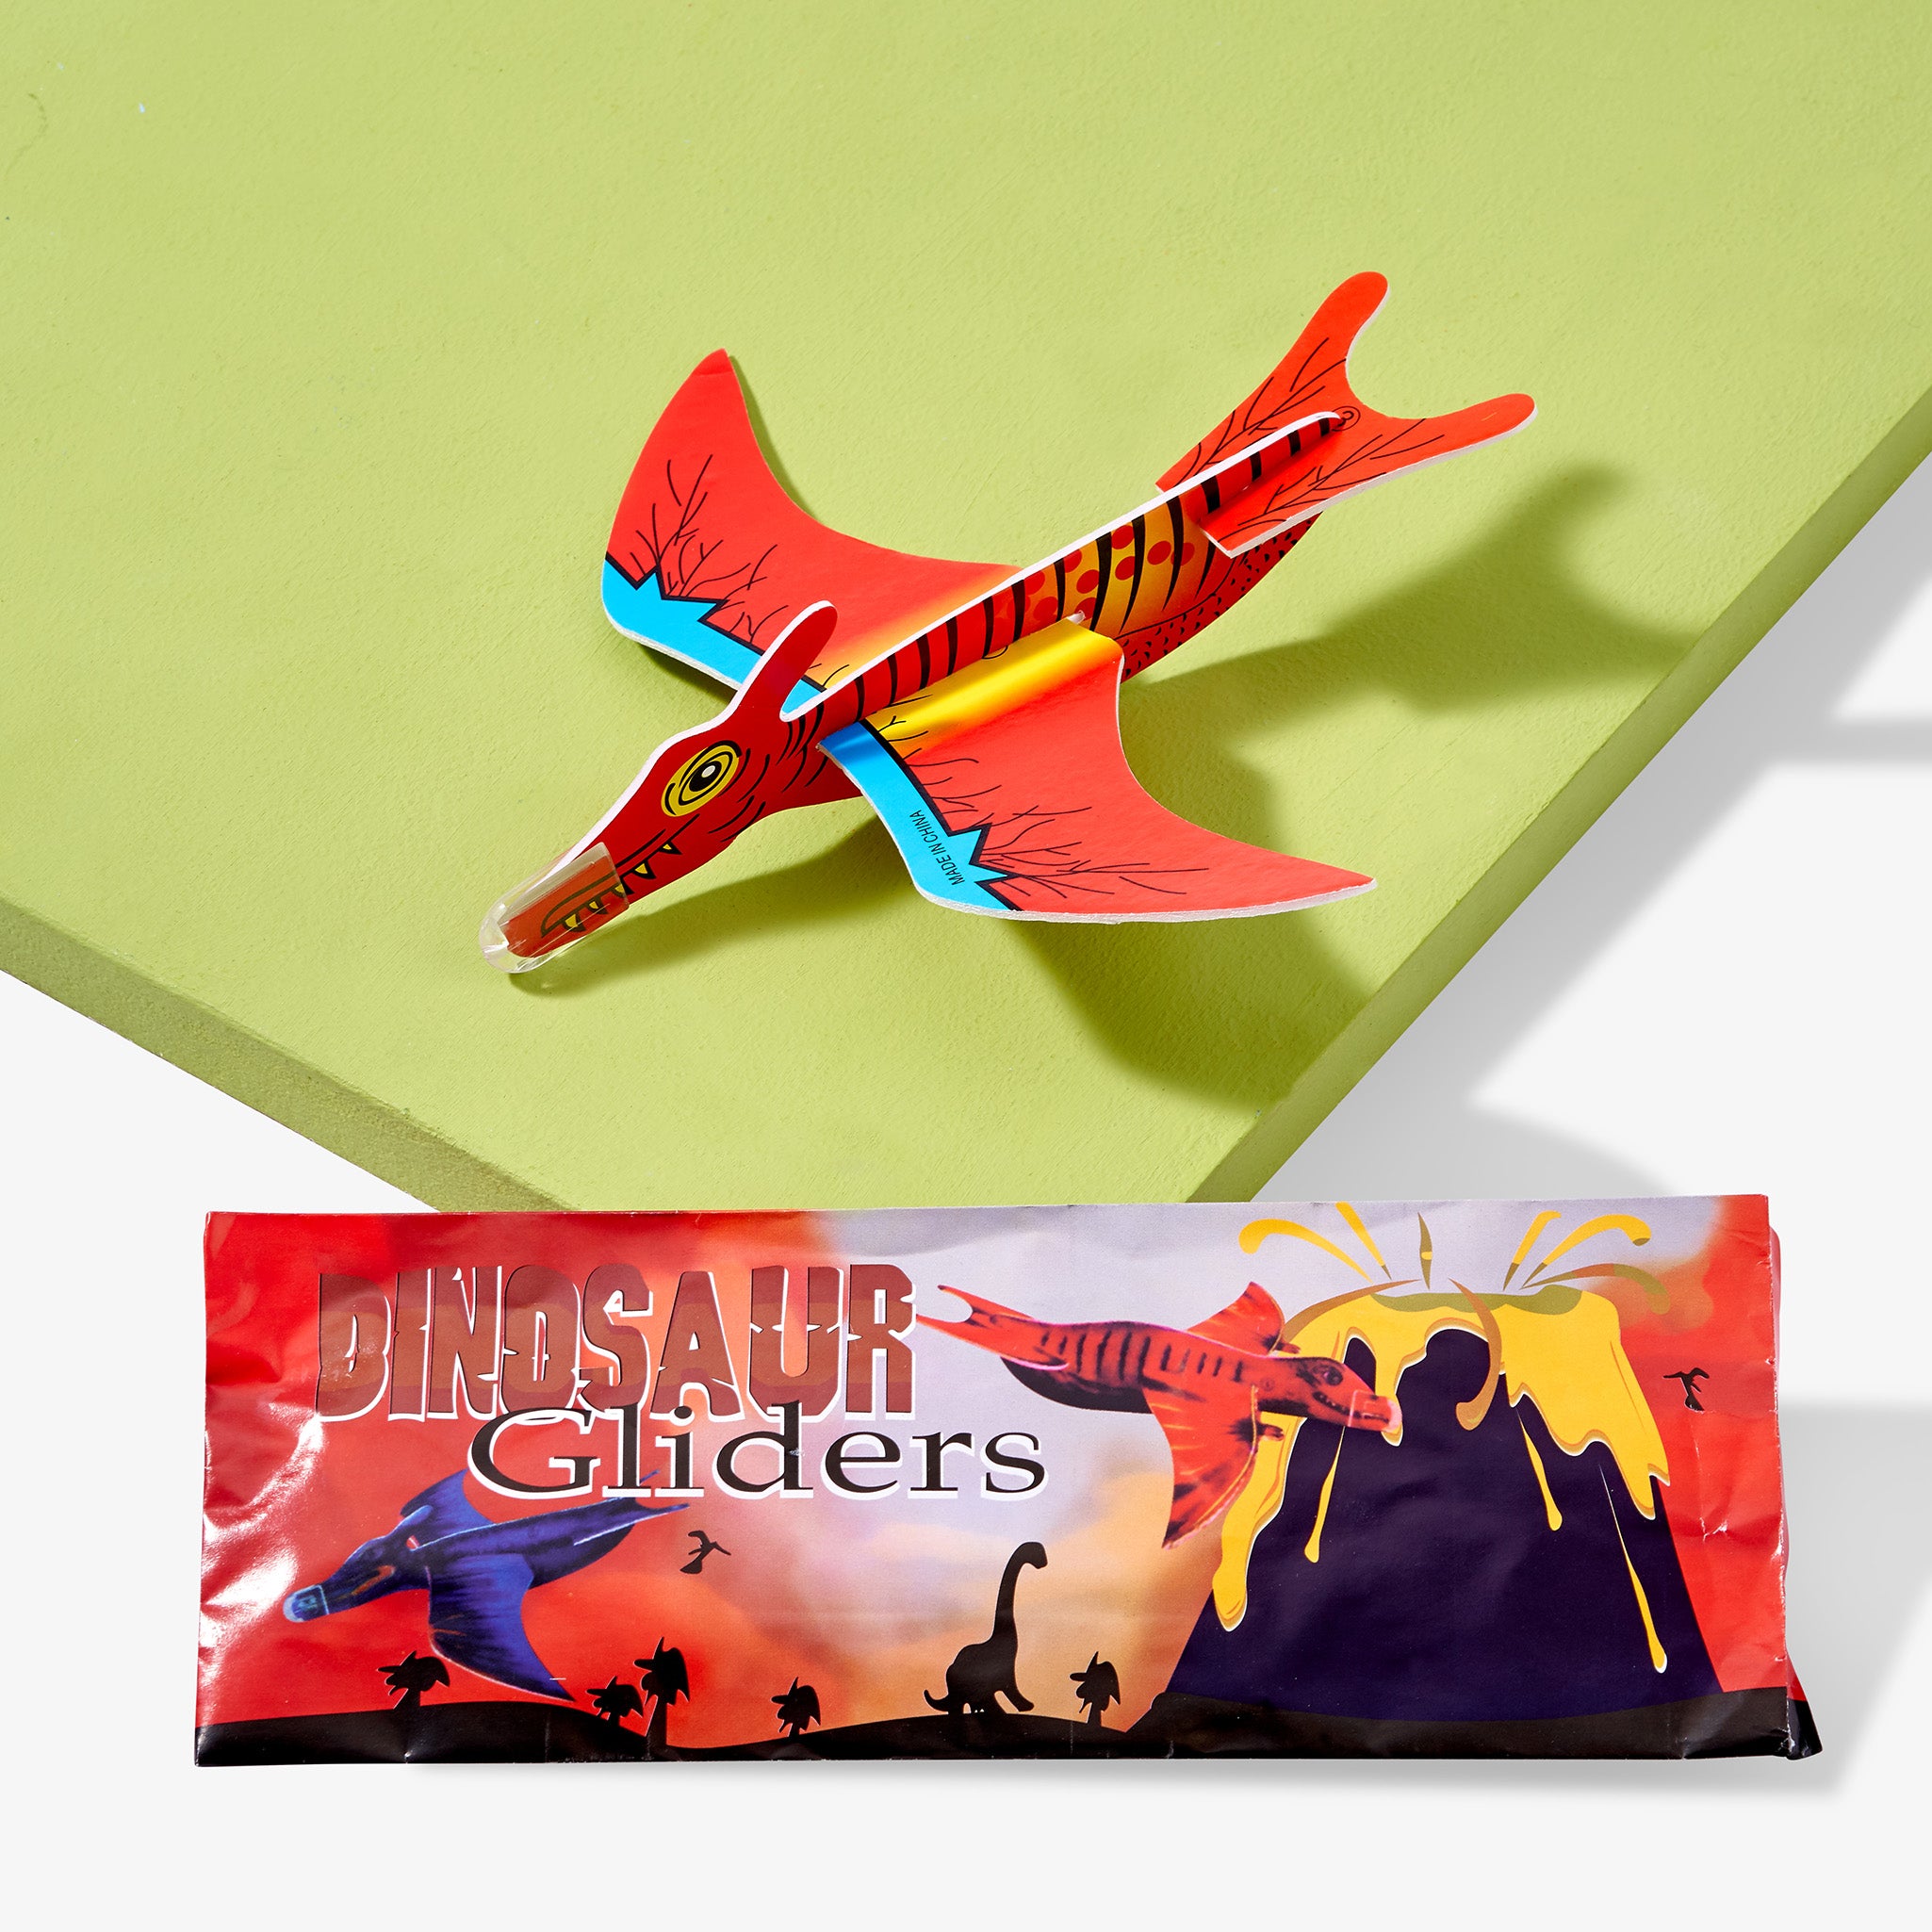 48 Dinosaur Glider Planes